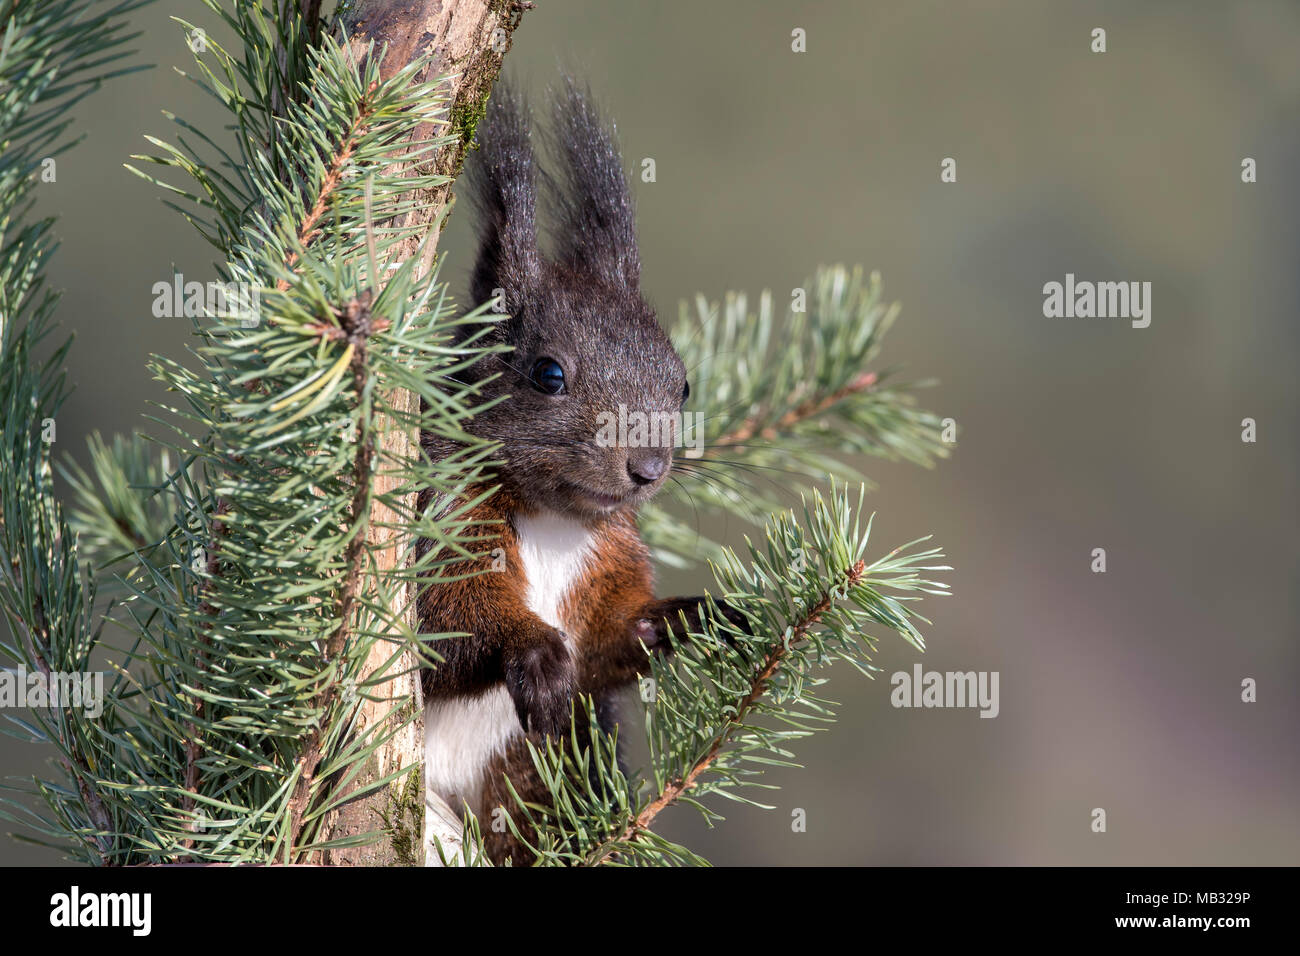 Eurasian red squirrel (Sciurus vulgaris) is located in Pine (Pinus), Tyrol, Austria Stock Photo